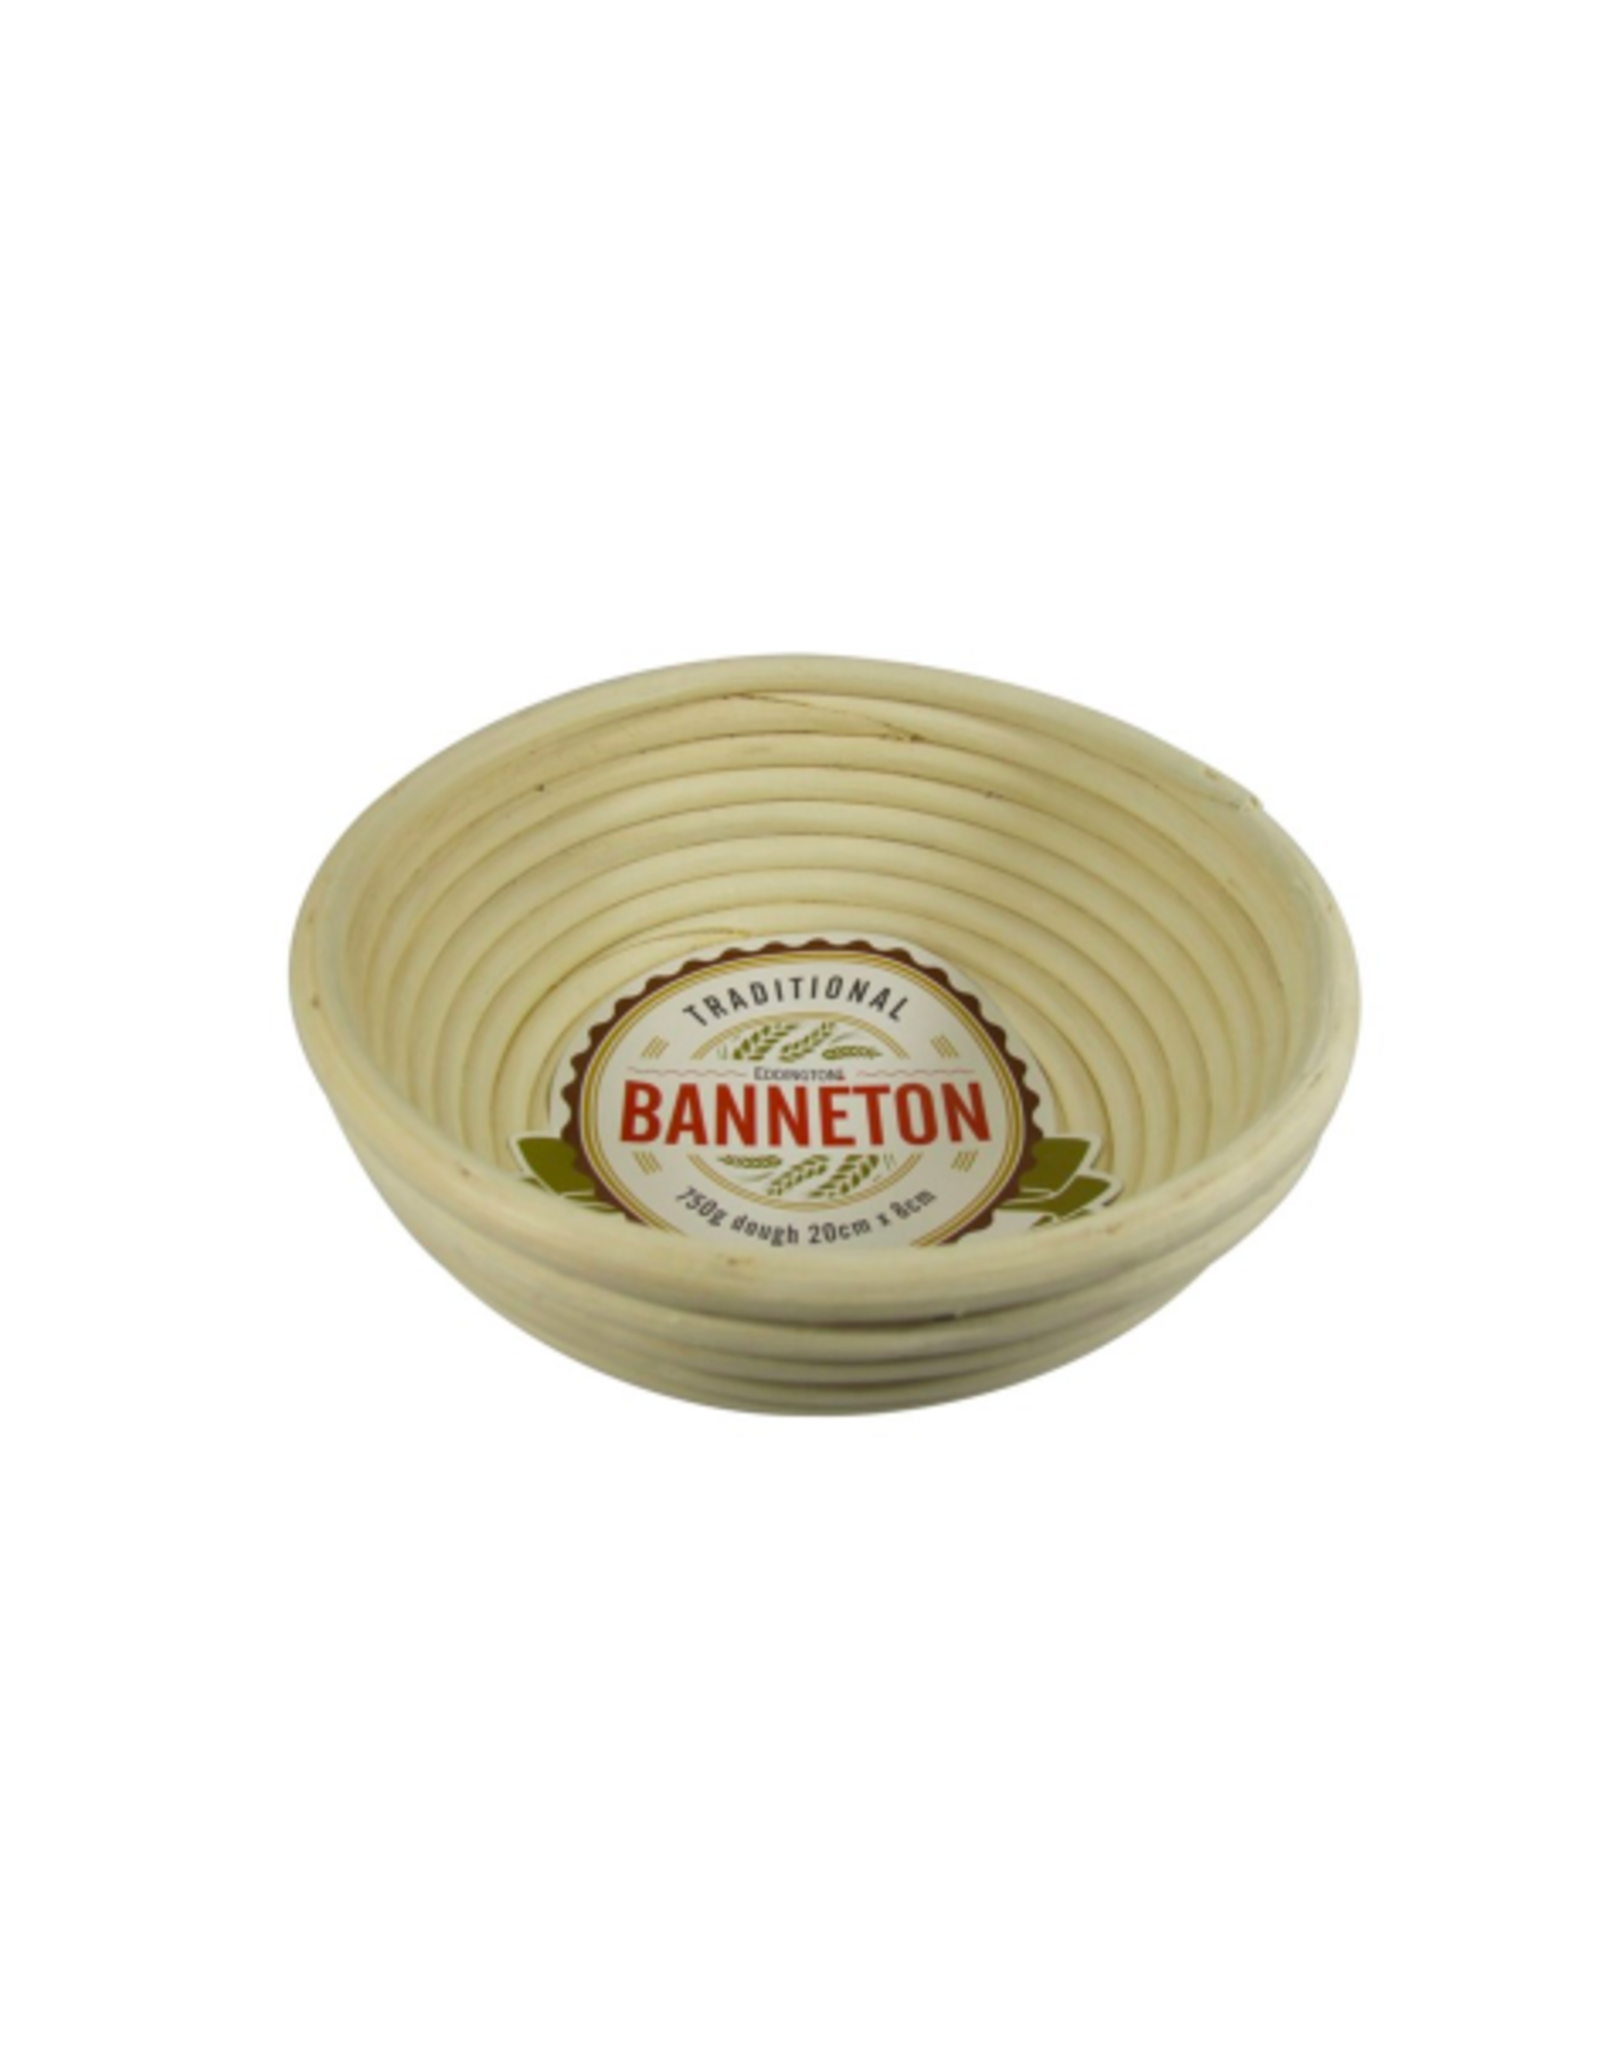 PLE - Banneton Proofing Basket / Round, 8"